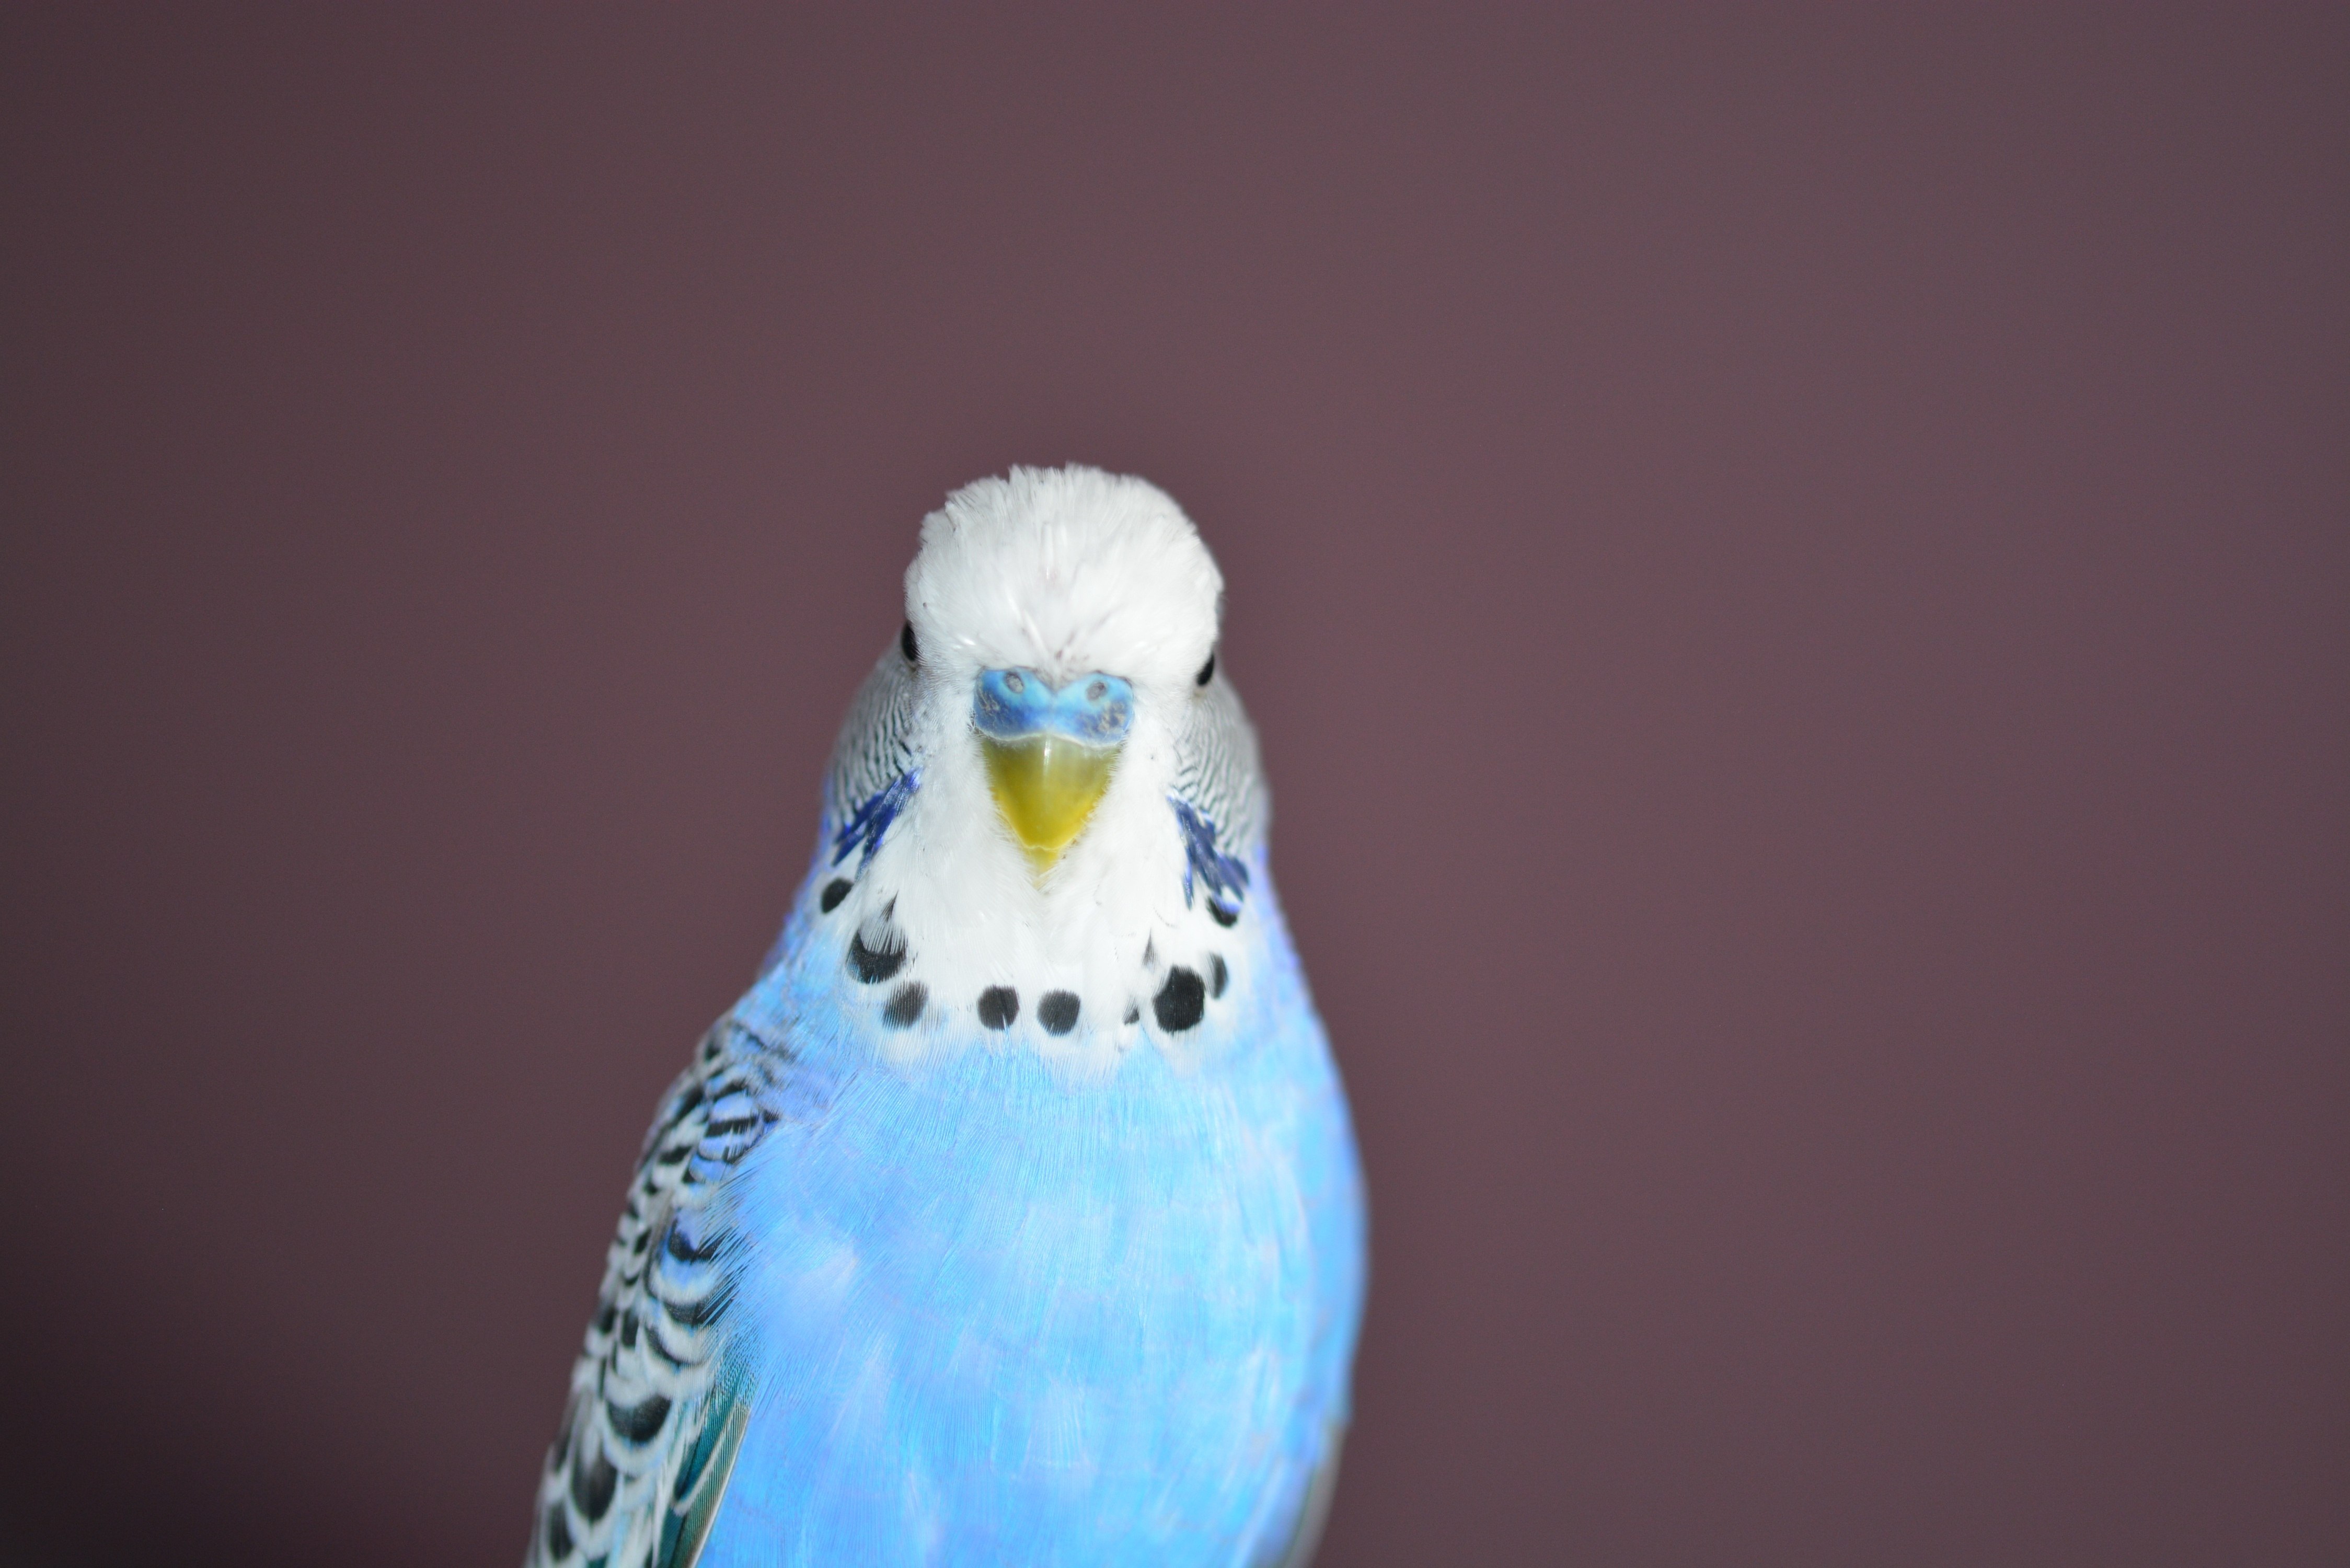 Волнистый попугай машет крыльями. Попугаи волнистые попугайчики. Волнистый попугайчик синий. Попугай волнистый голубой. Волнистый попугай голубого цвета.